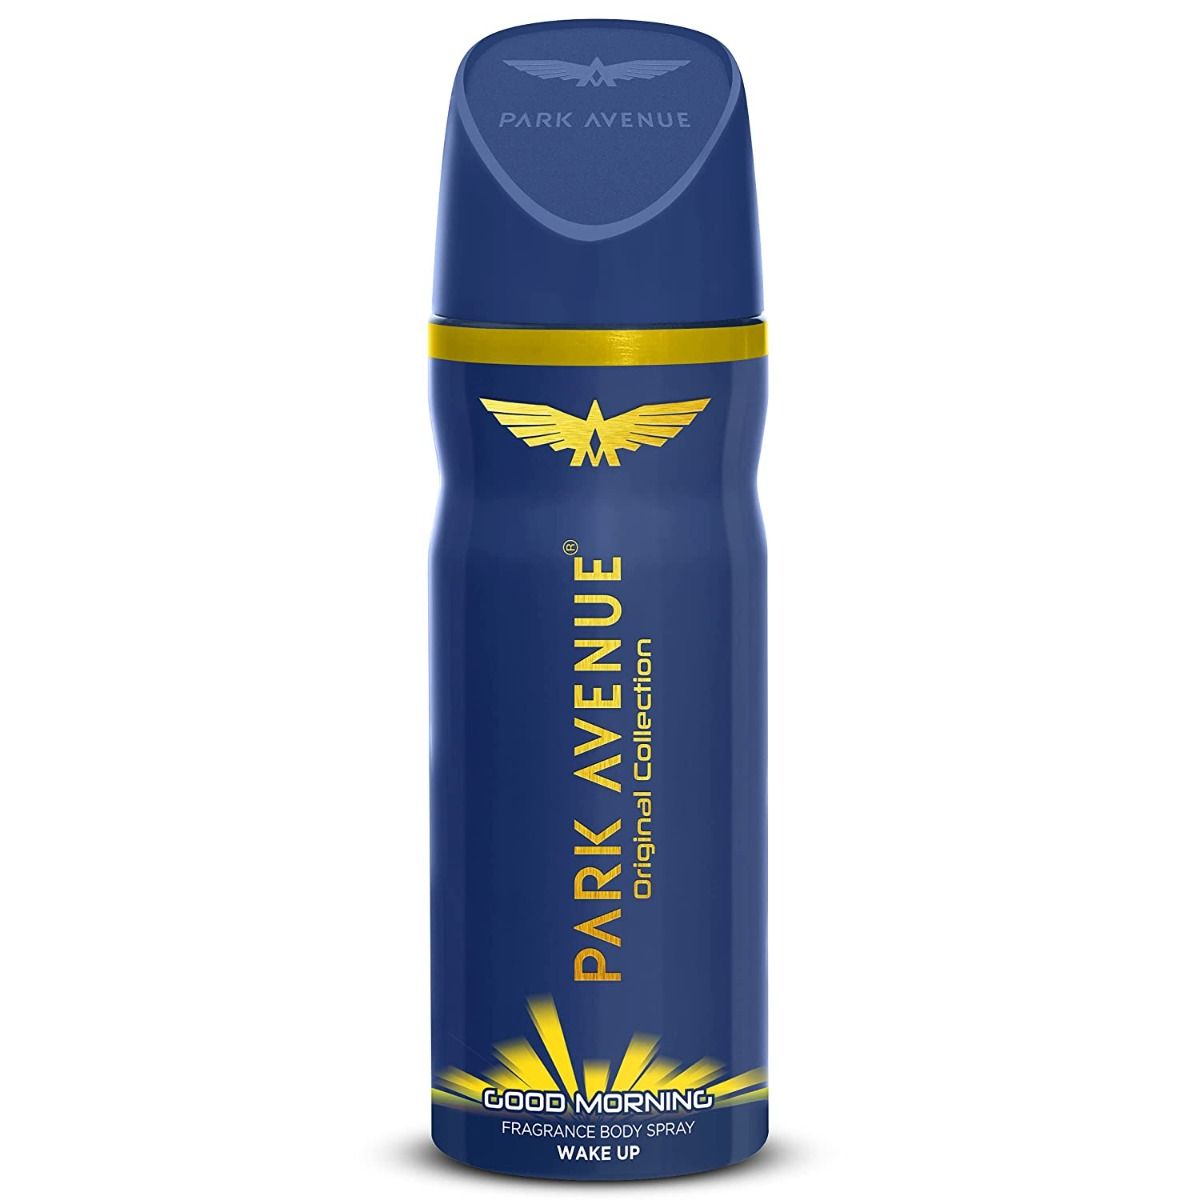 Park Avenue Good Morning Fragrance Body Spray for Men, 150 ml, Pack of 1 